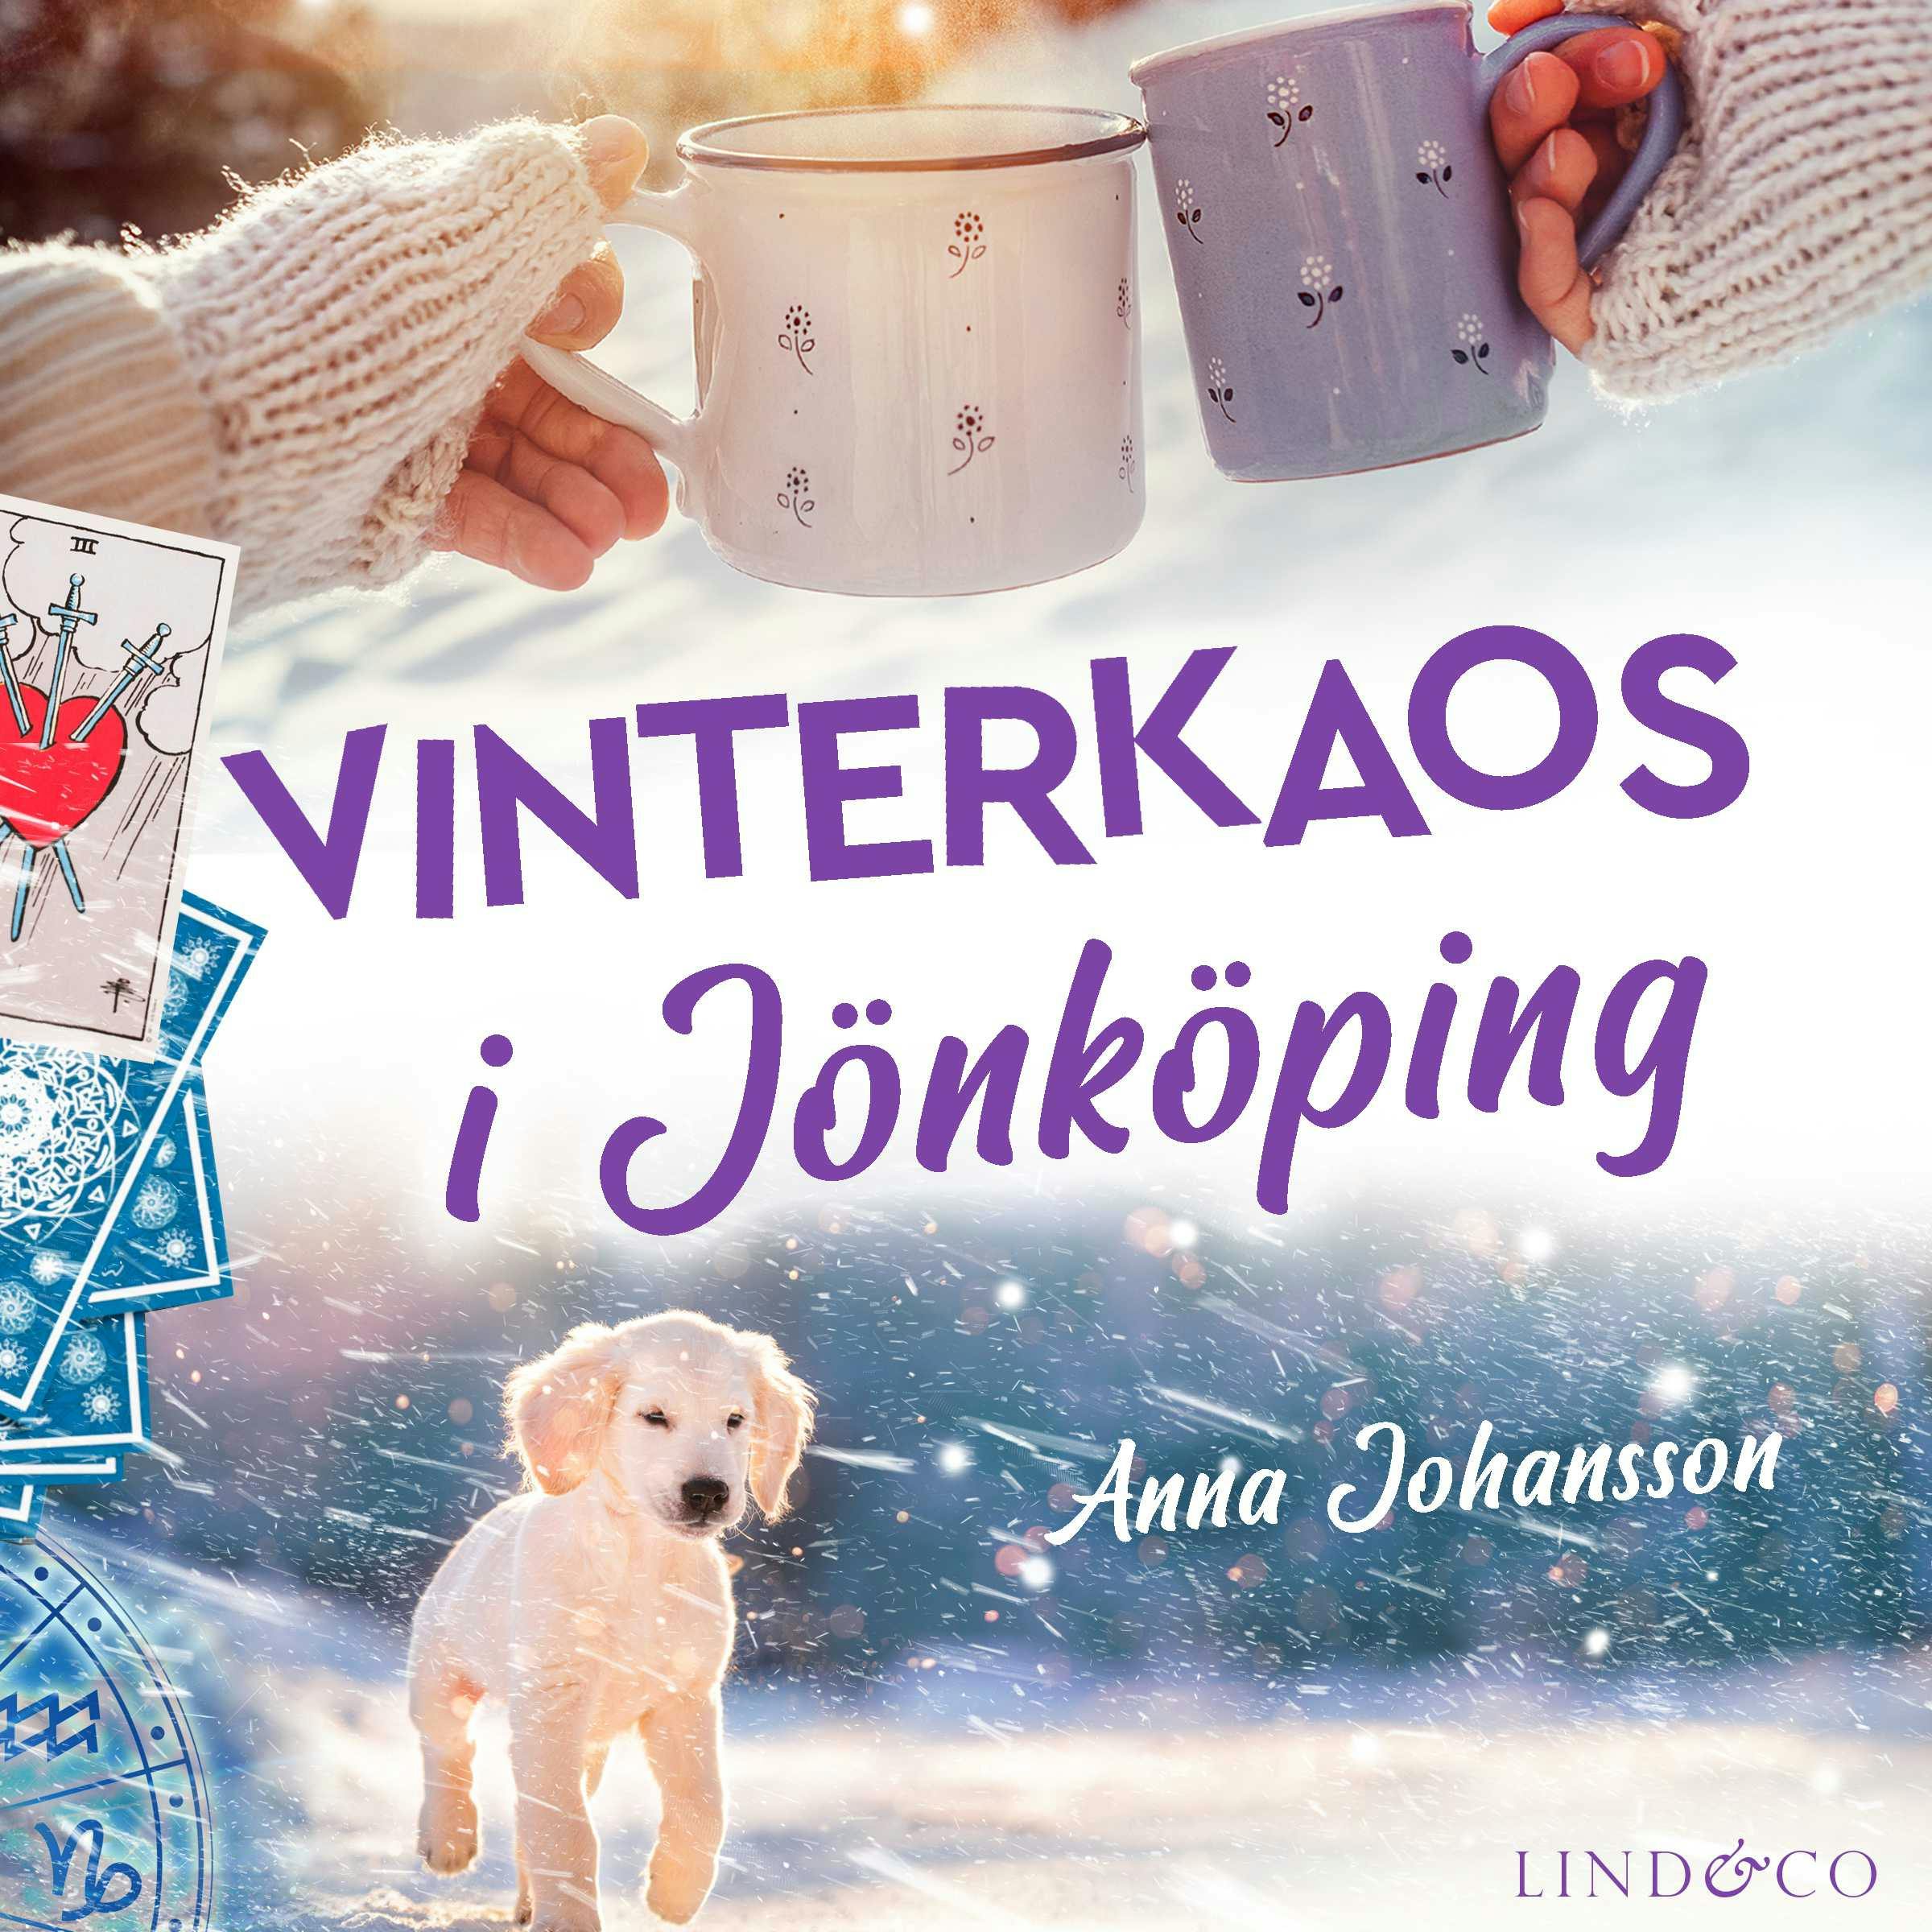 Vinterkaos i Jönköping - undefined